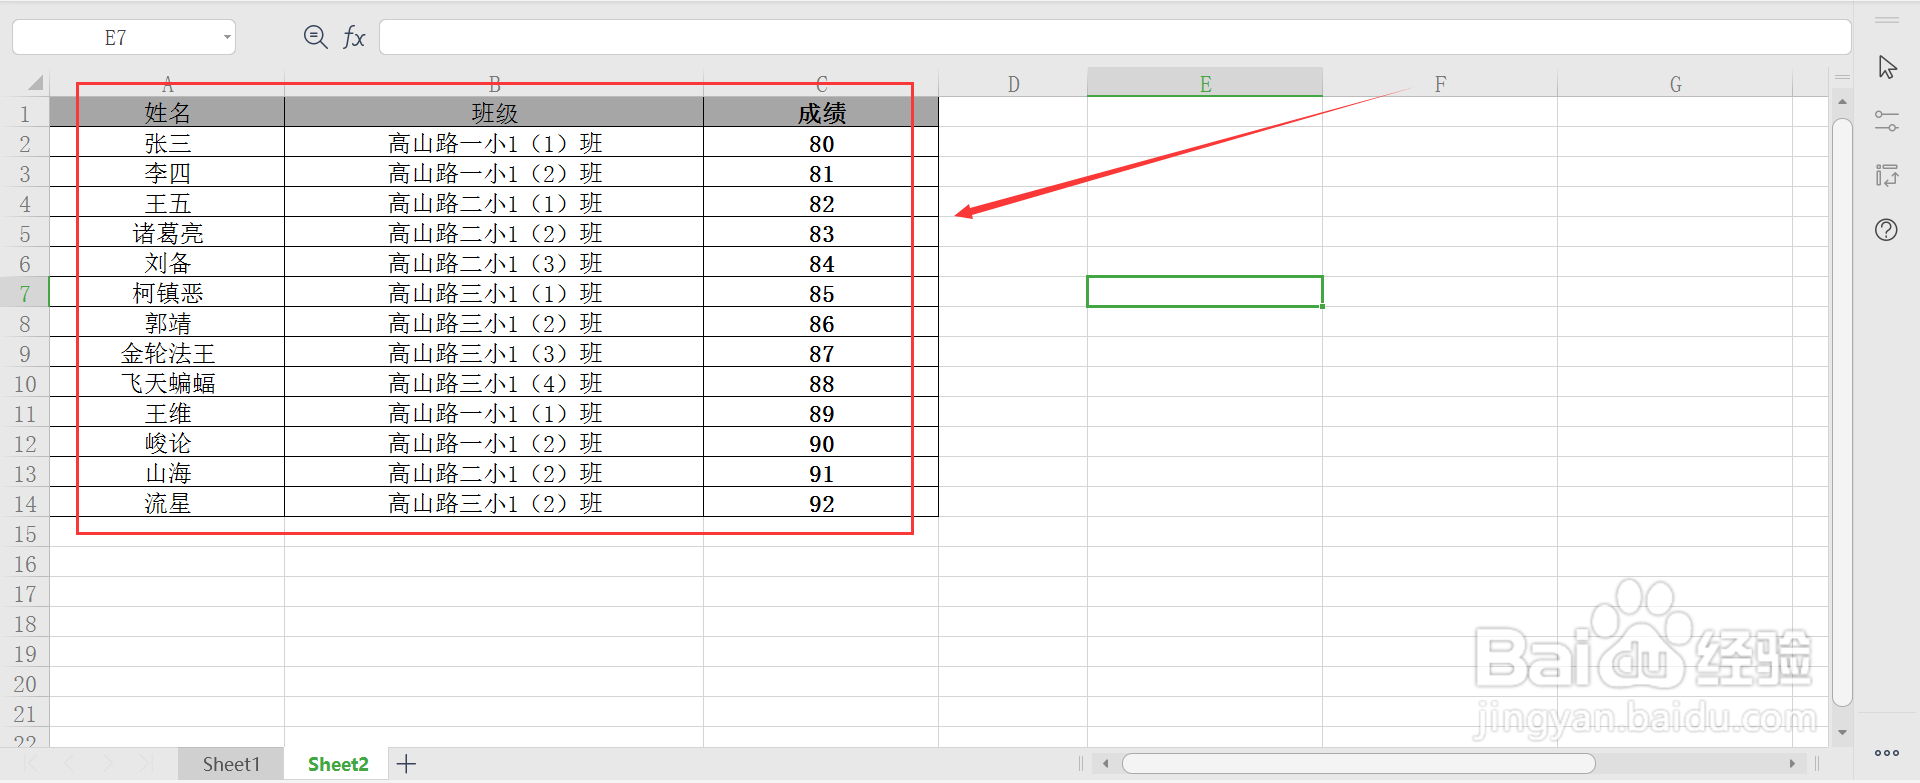 <b>Excel如何提取指定名称来统计学生的平均成绩</b>